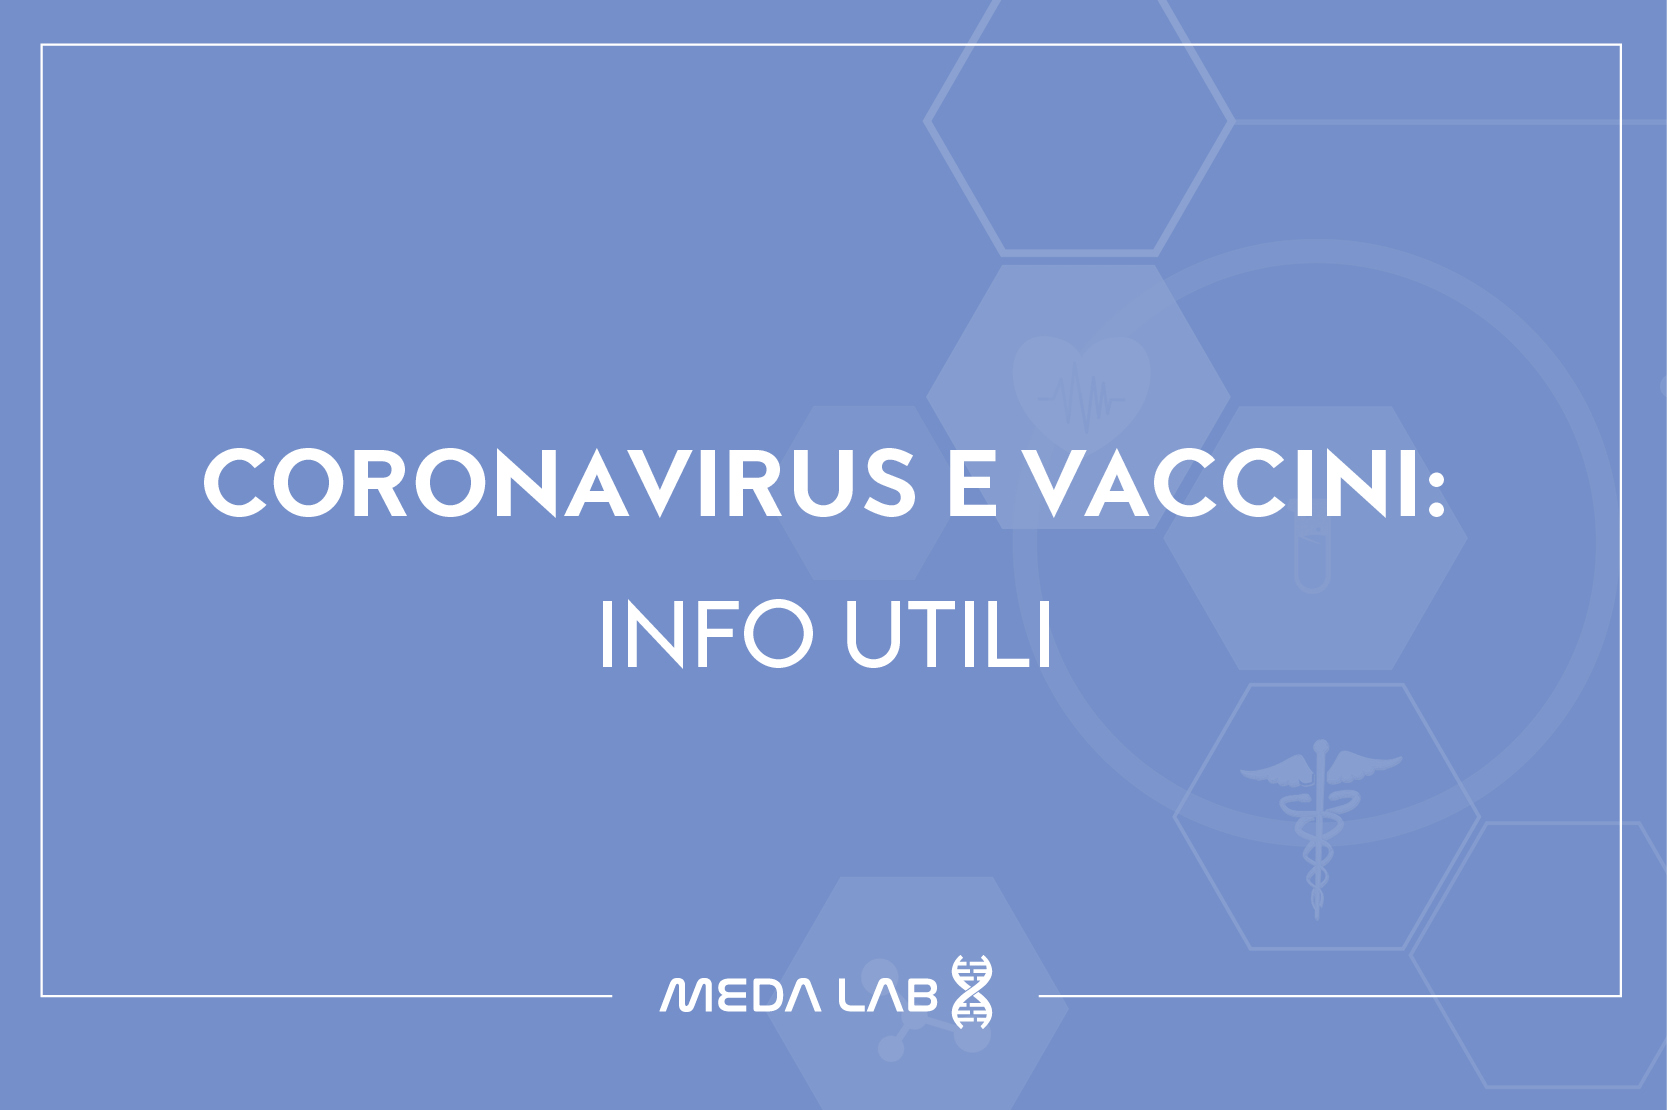 Coronavirus e vaccini: alcune informazioni utili